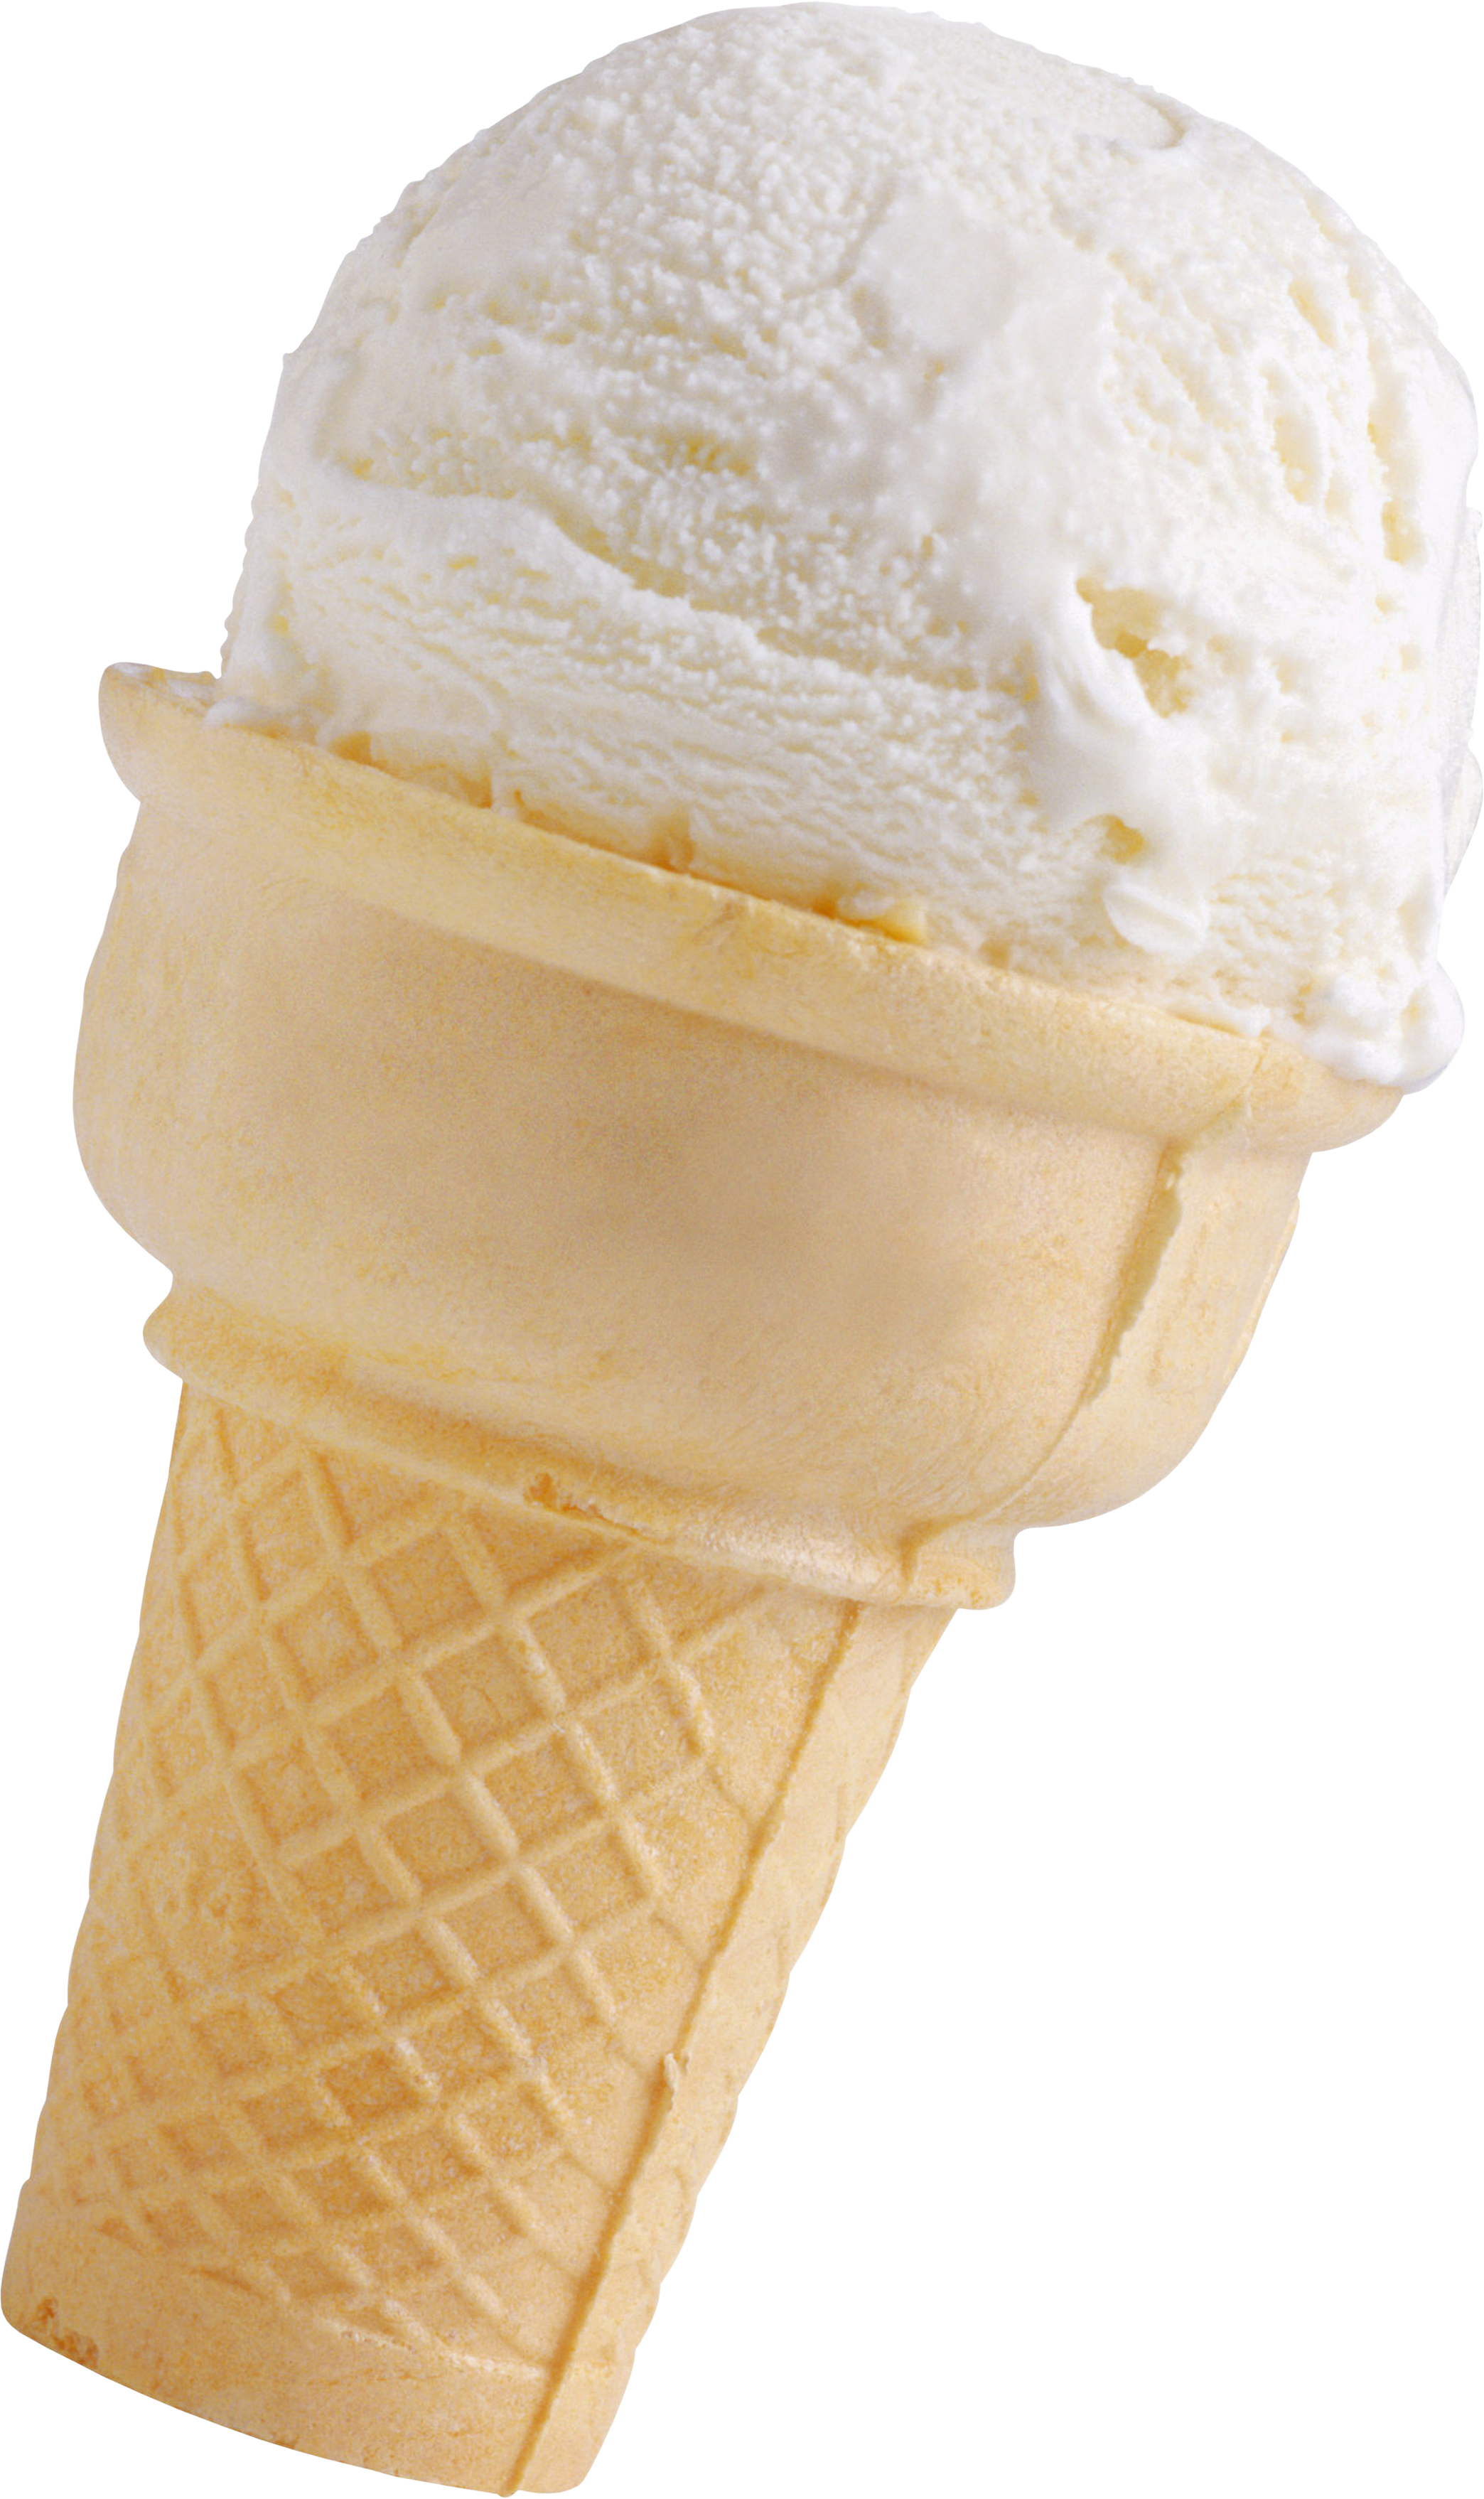 ice cream transparent background
